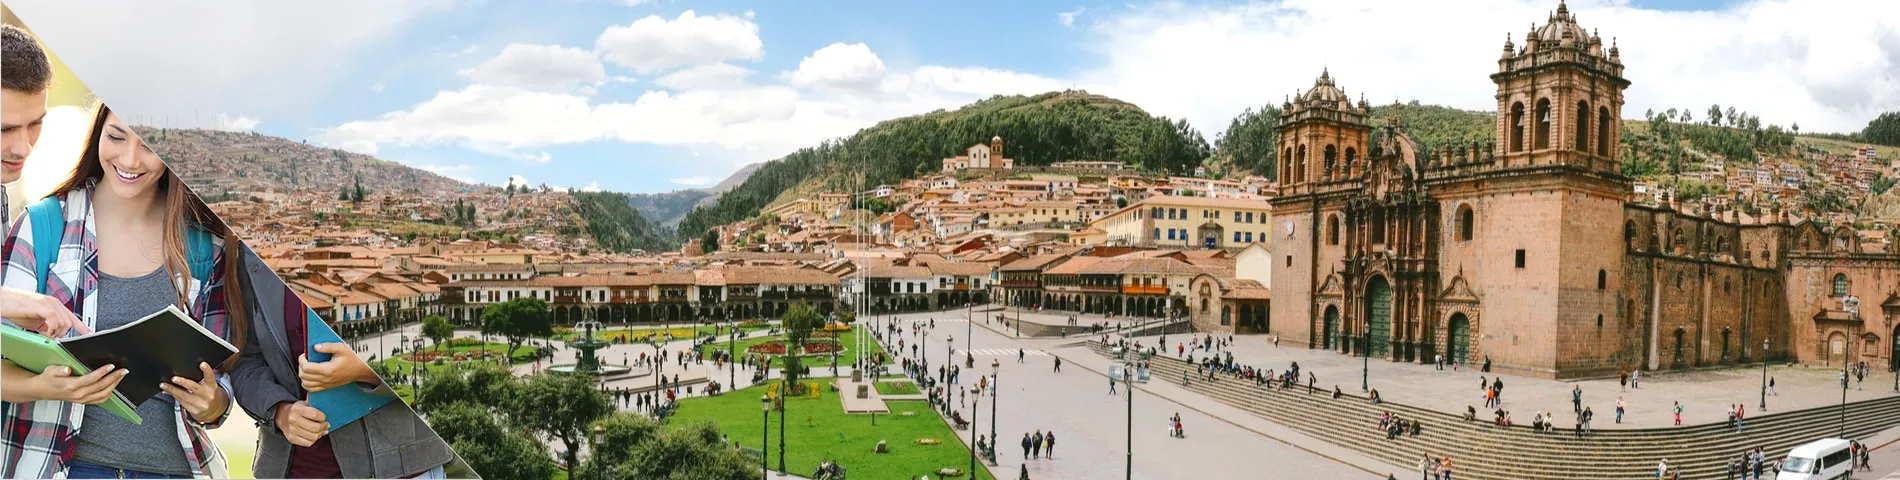 Cuzco - 